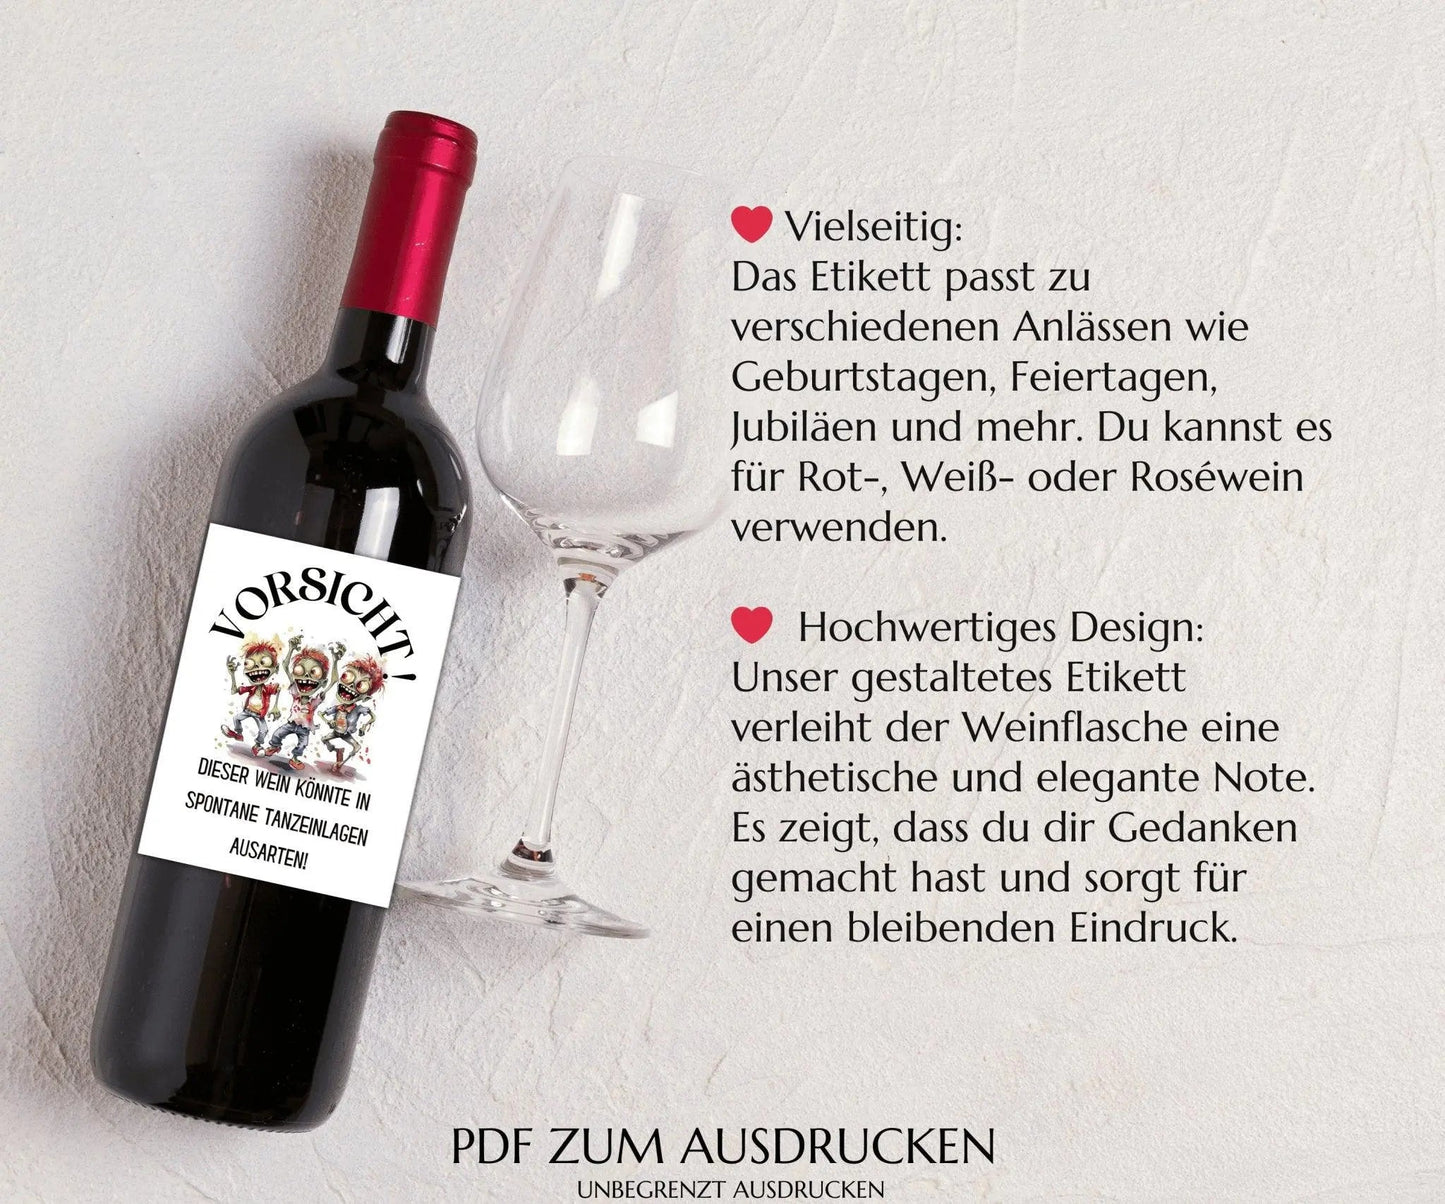 Vorsicht, dieser Wein könnte in spontane Tanzeinlagen ausarten - Weinetikett zum Ausdrucken - JSKDesignStudio.de